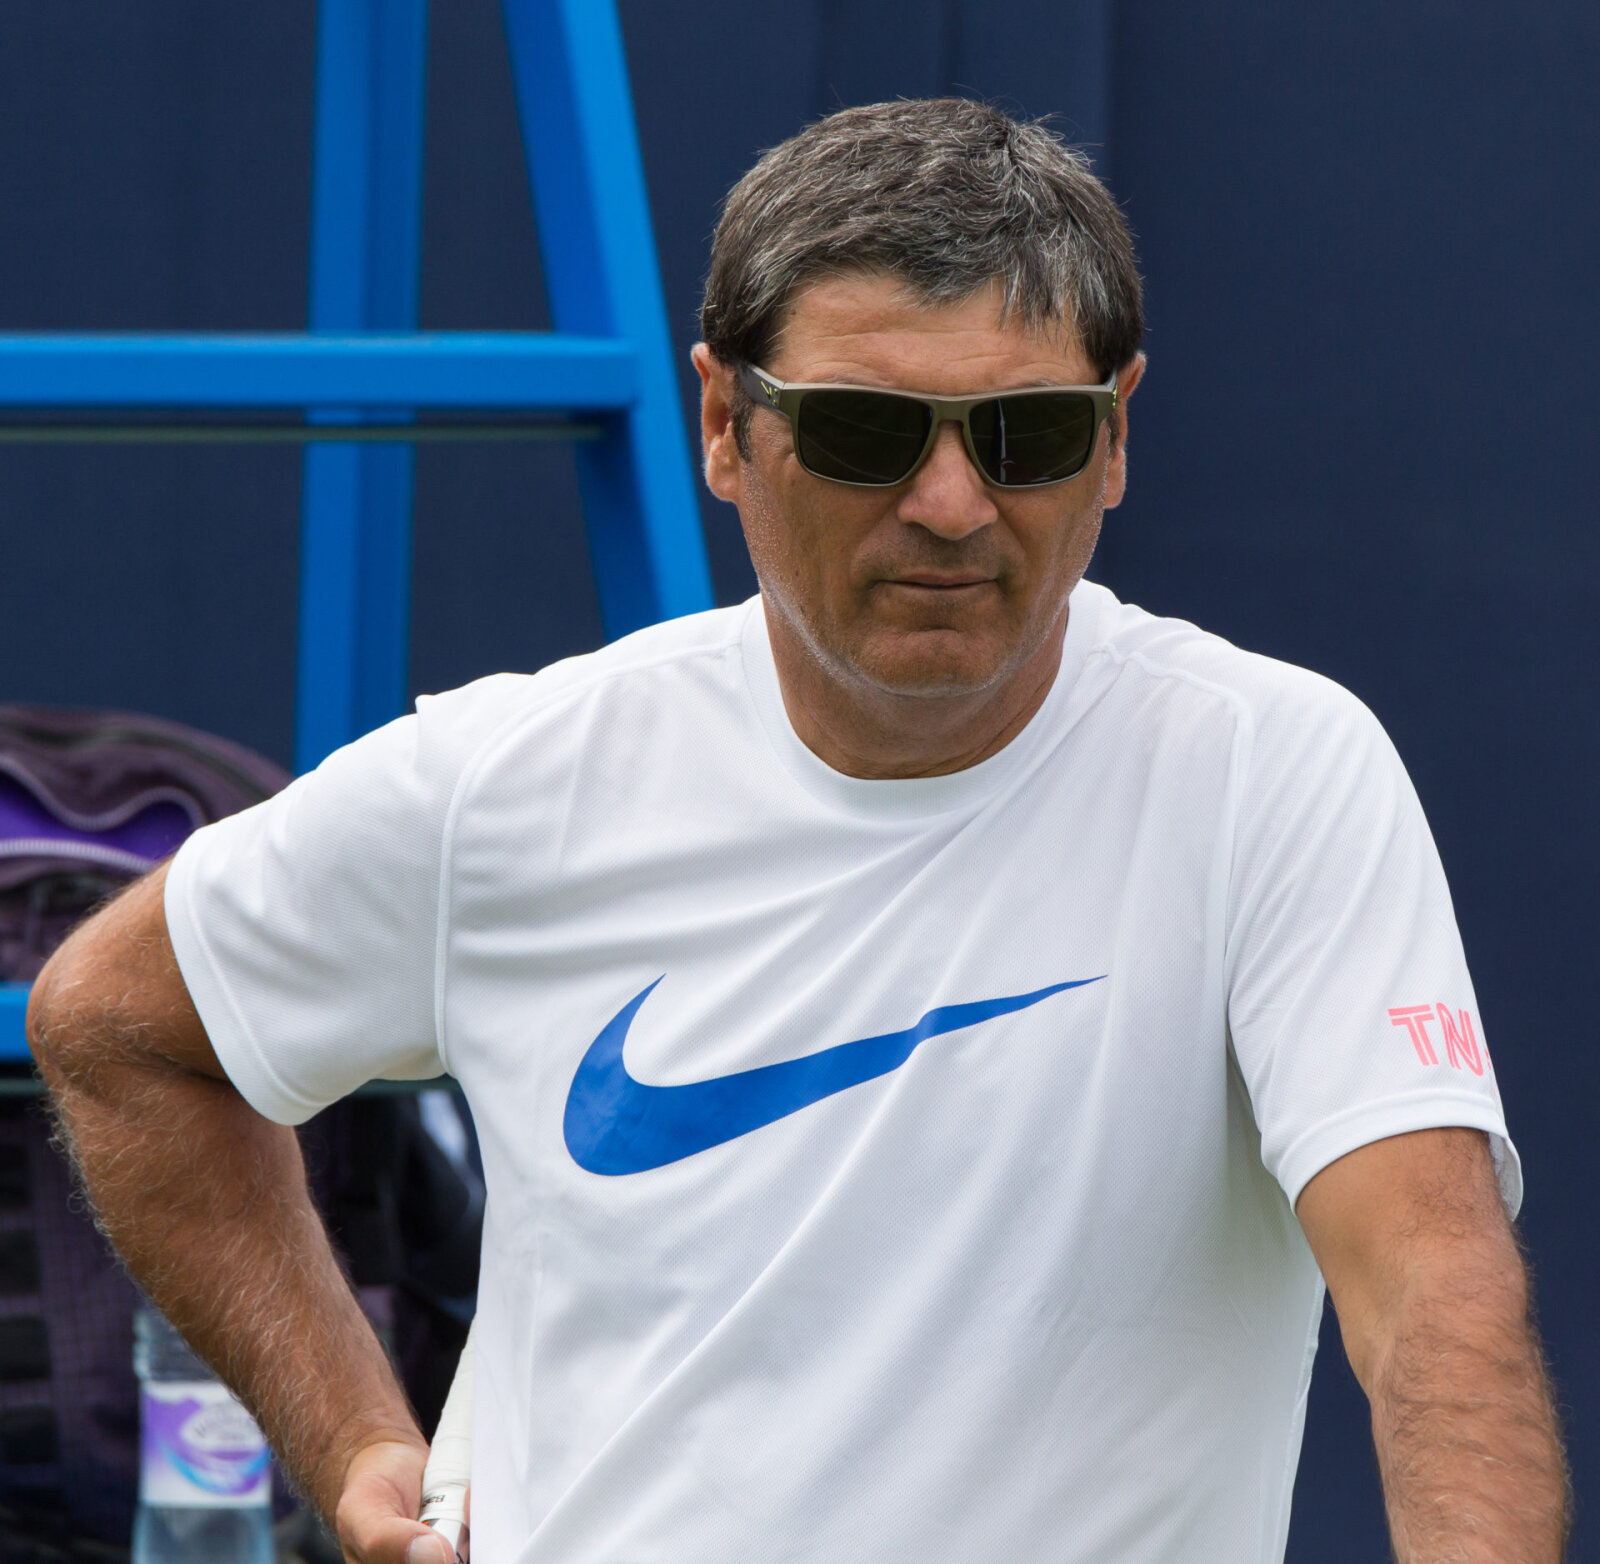 La victoire de Stefanos sur Novak Djokovic aurait pu atténuer la déception de Rafael Nadal à Roland-Garros 2021, selon l'oncle Toni Nadal